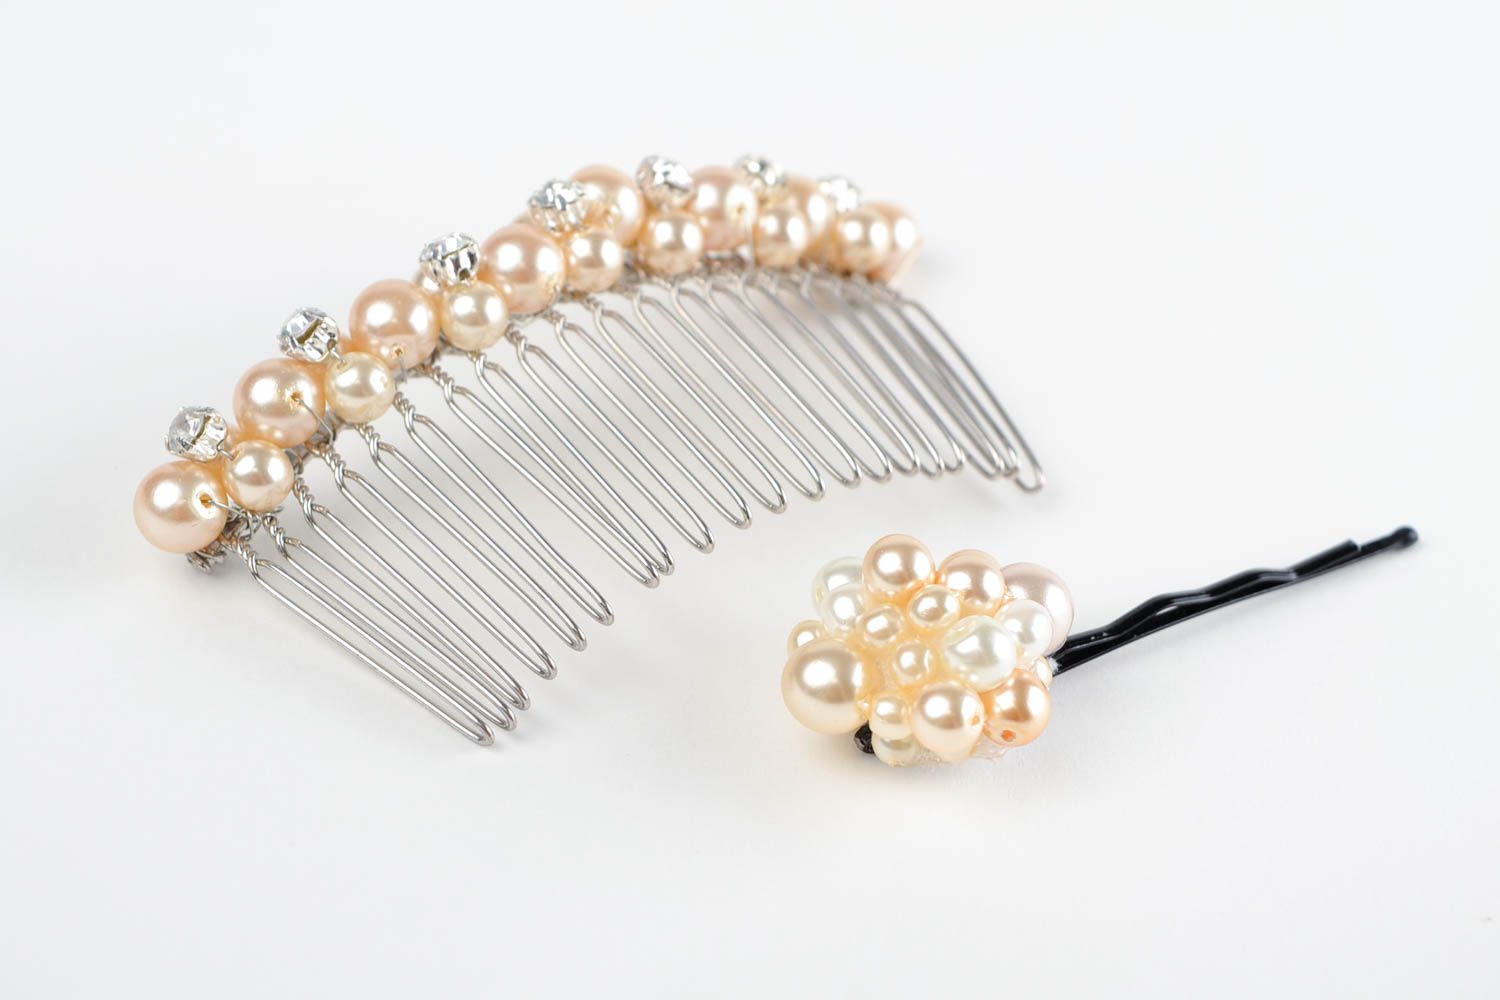 Handmade hair clip beautiful wedding accessories gift ideas hair clip photo 3